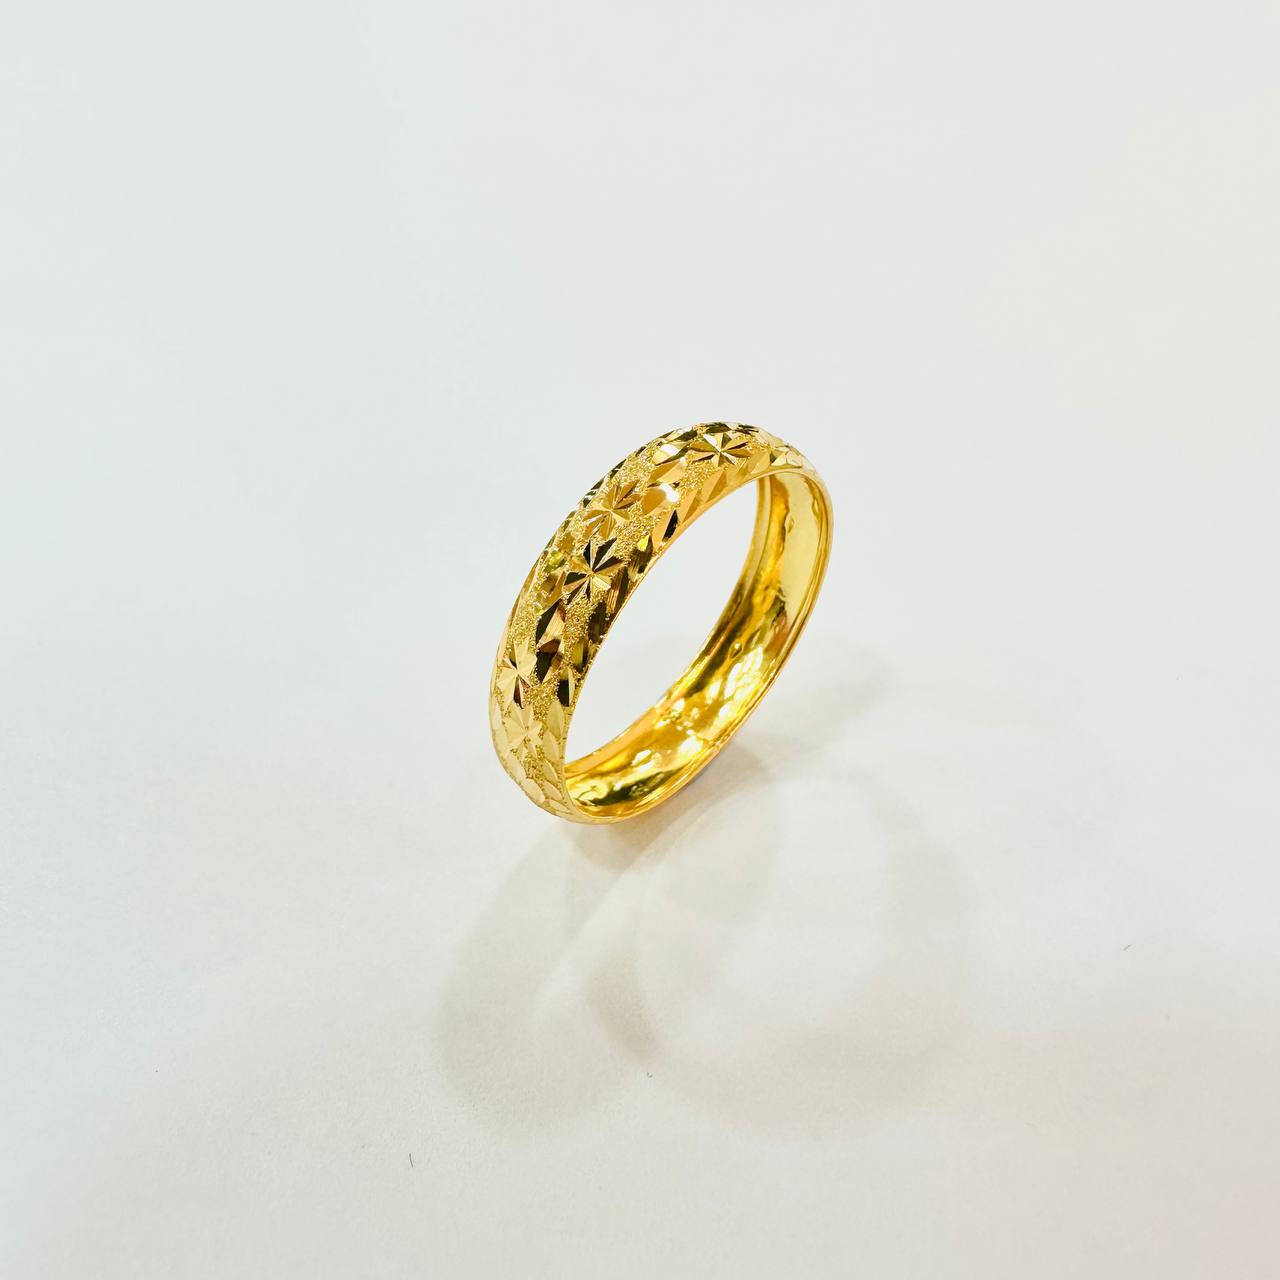 22k / 916 Gold Hollow Ring Design V4-916 gold-Best Gold Shop